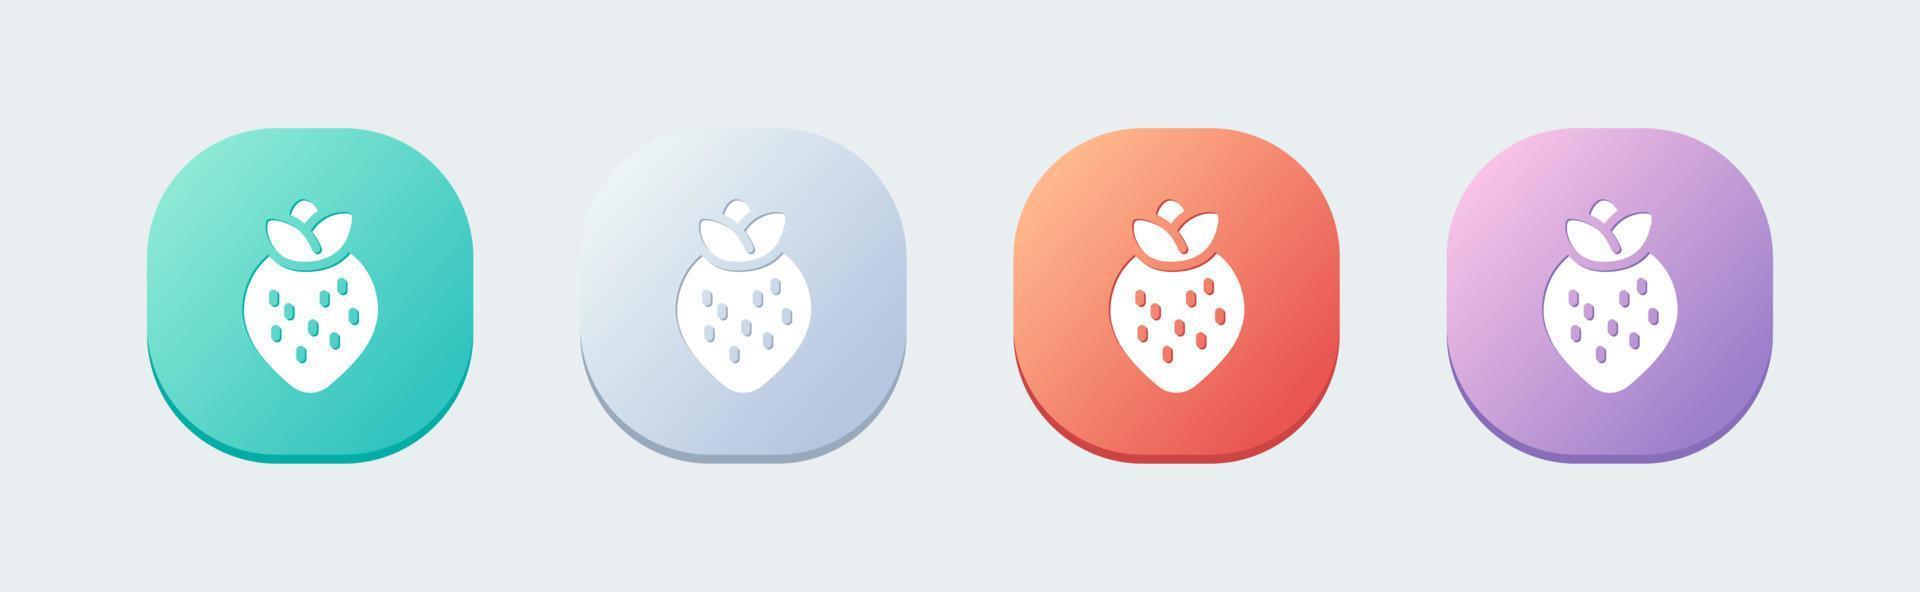 icono sólido de fresa en estilo de diseño plano. ilustración de vector de signos de fruta.